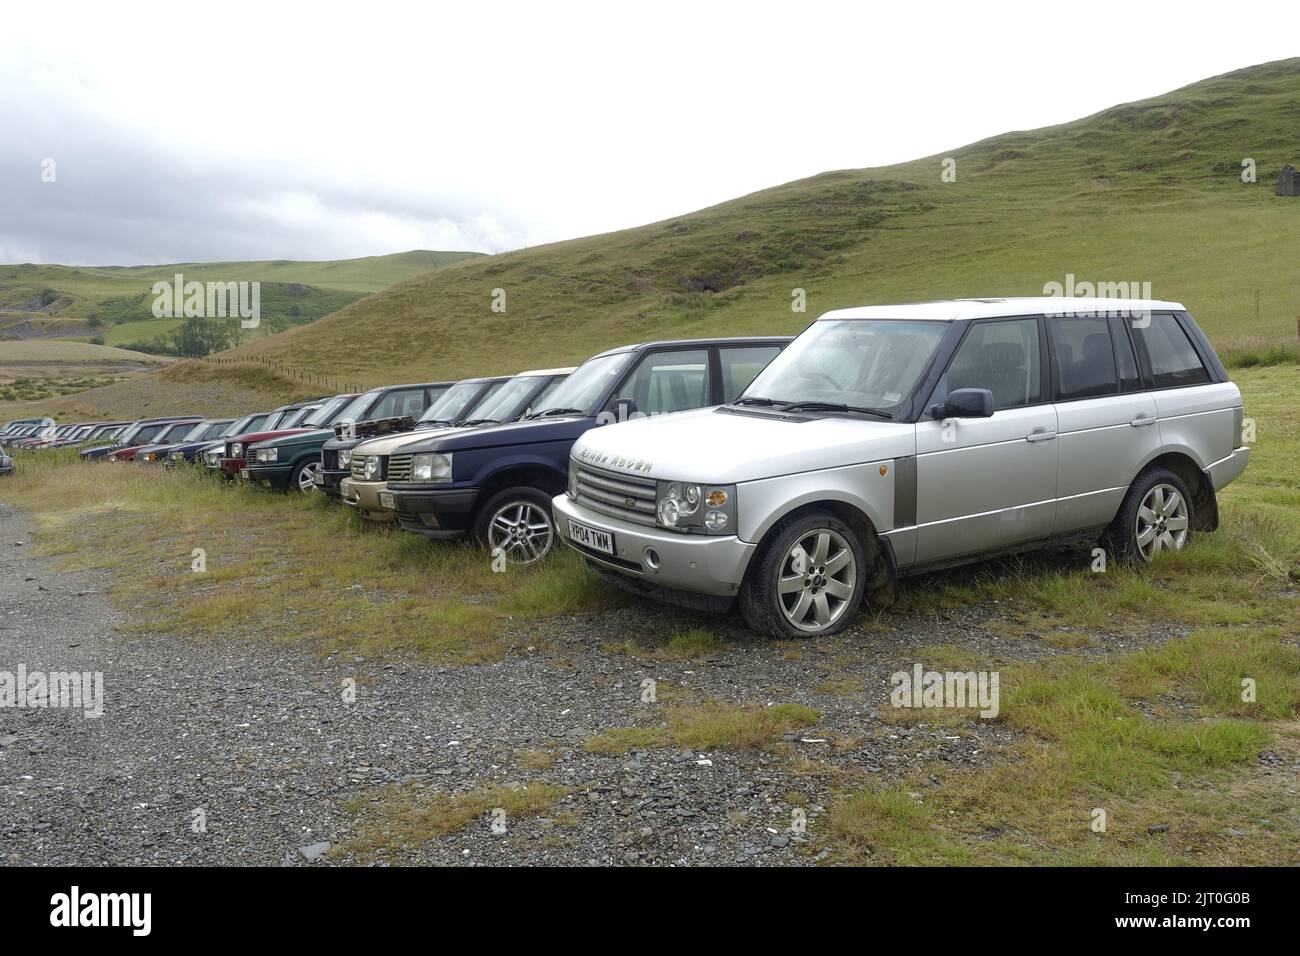 Un grand nombre de Range Rover d'occasion se trouvent sur un site de recyclage dans une campagne éloignée près de Trisant West Wales UK Banque D'Images